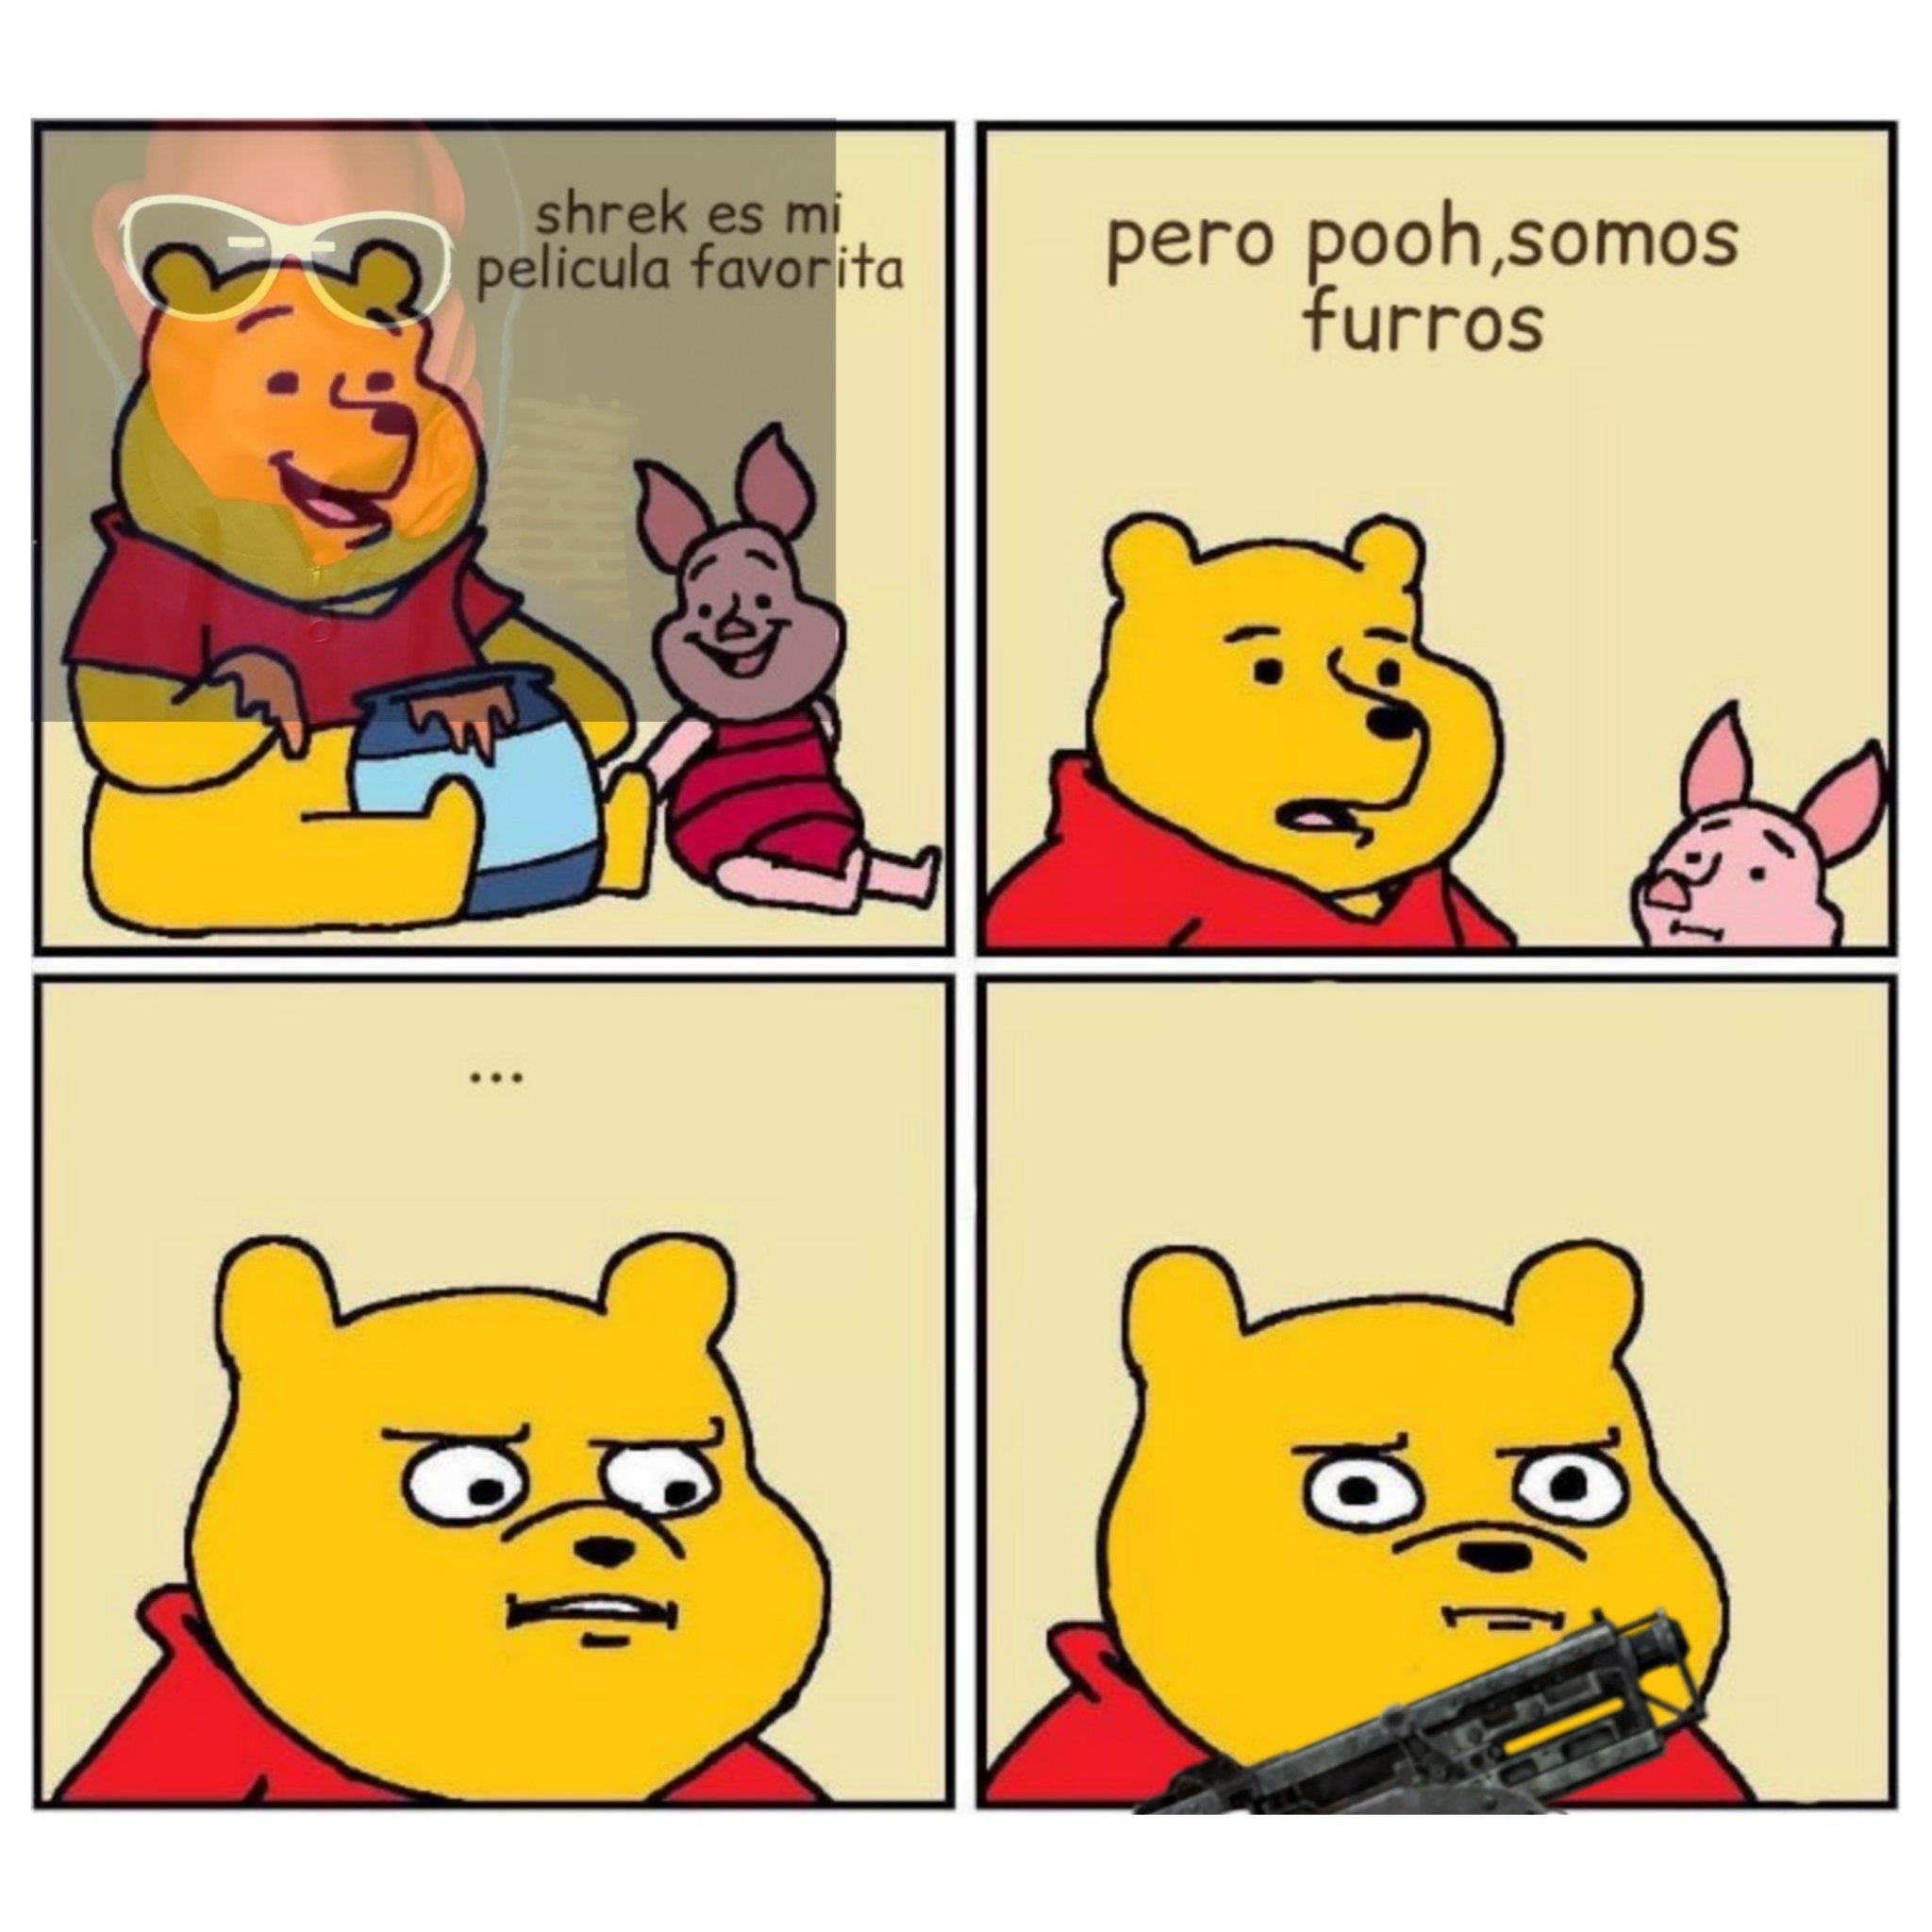 Matalo pooh - meme